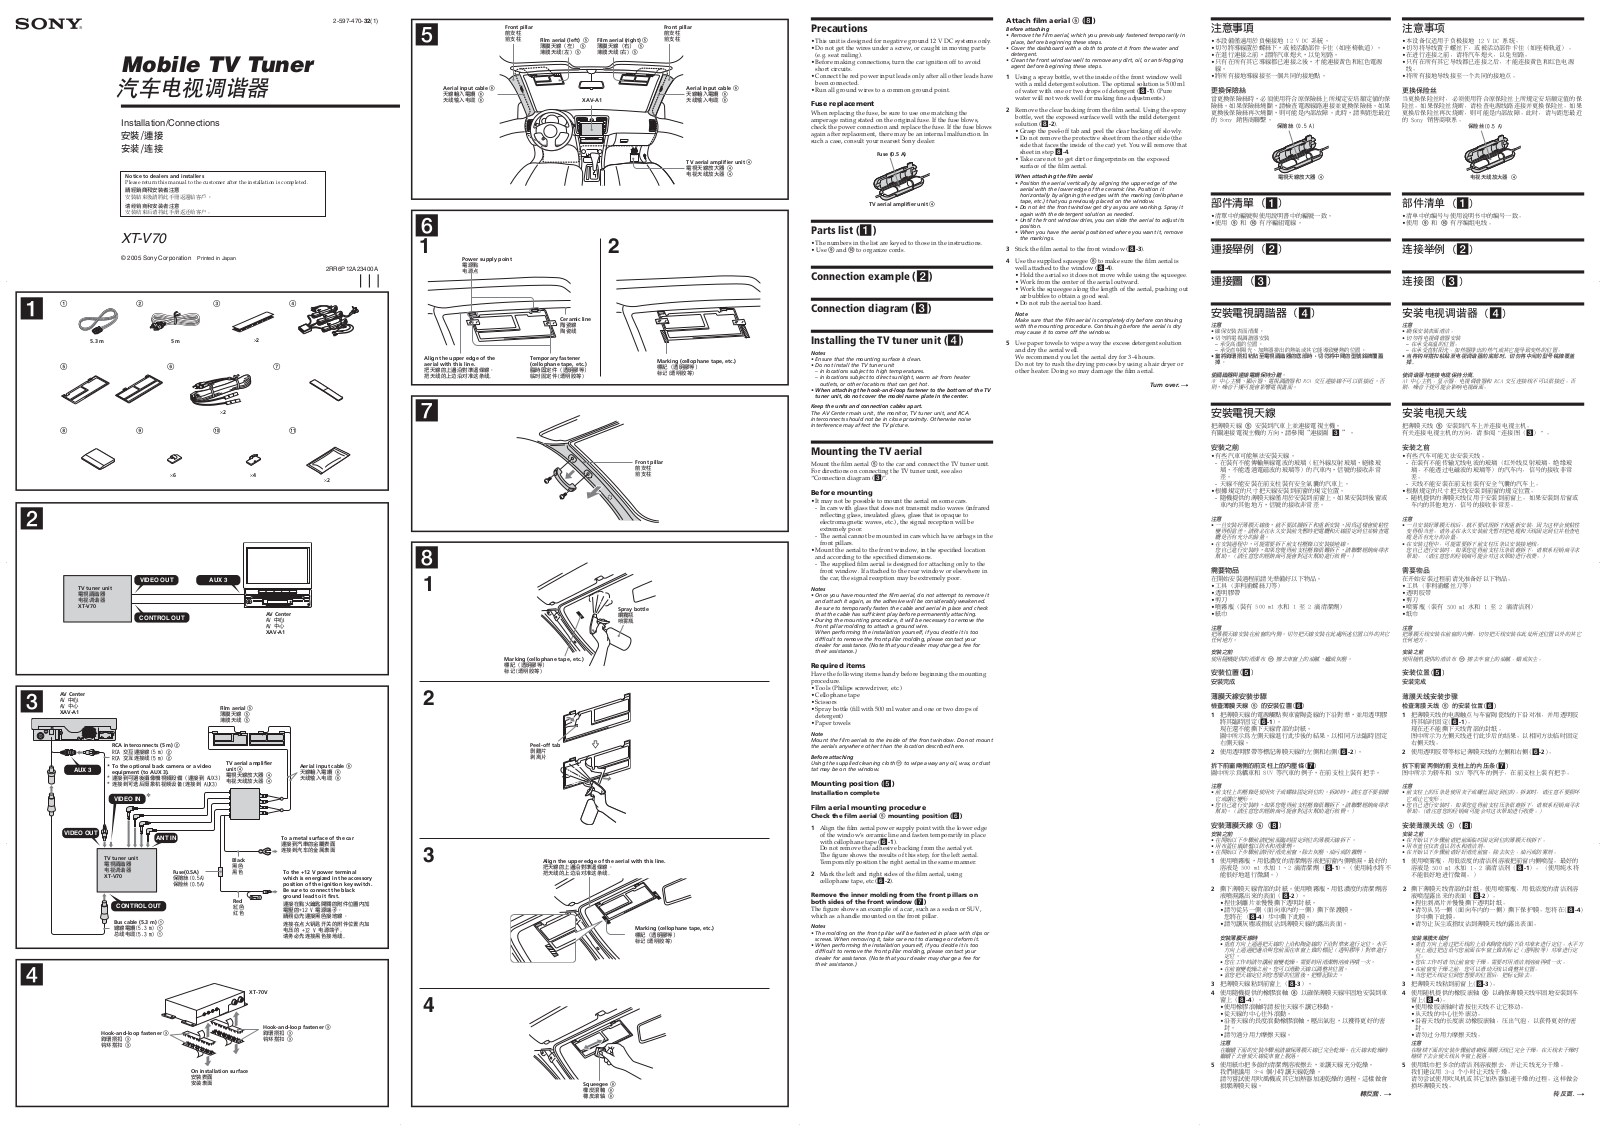 Sony XT-V70 User Manual 2